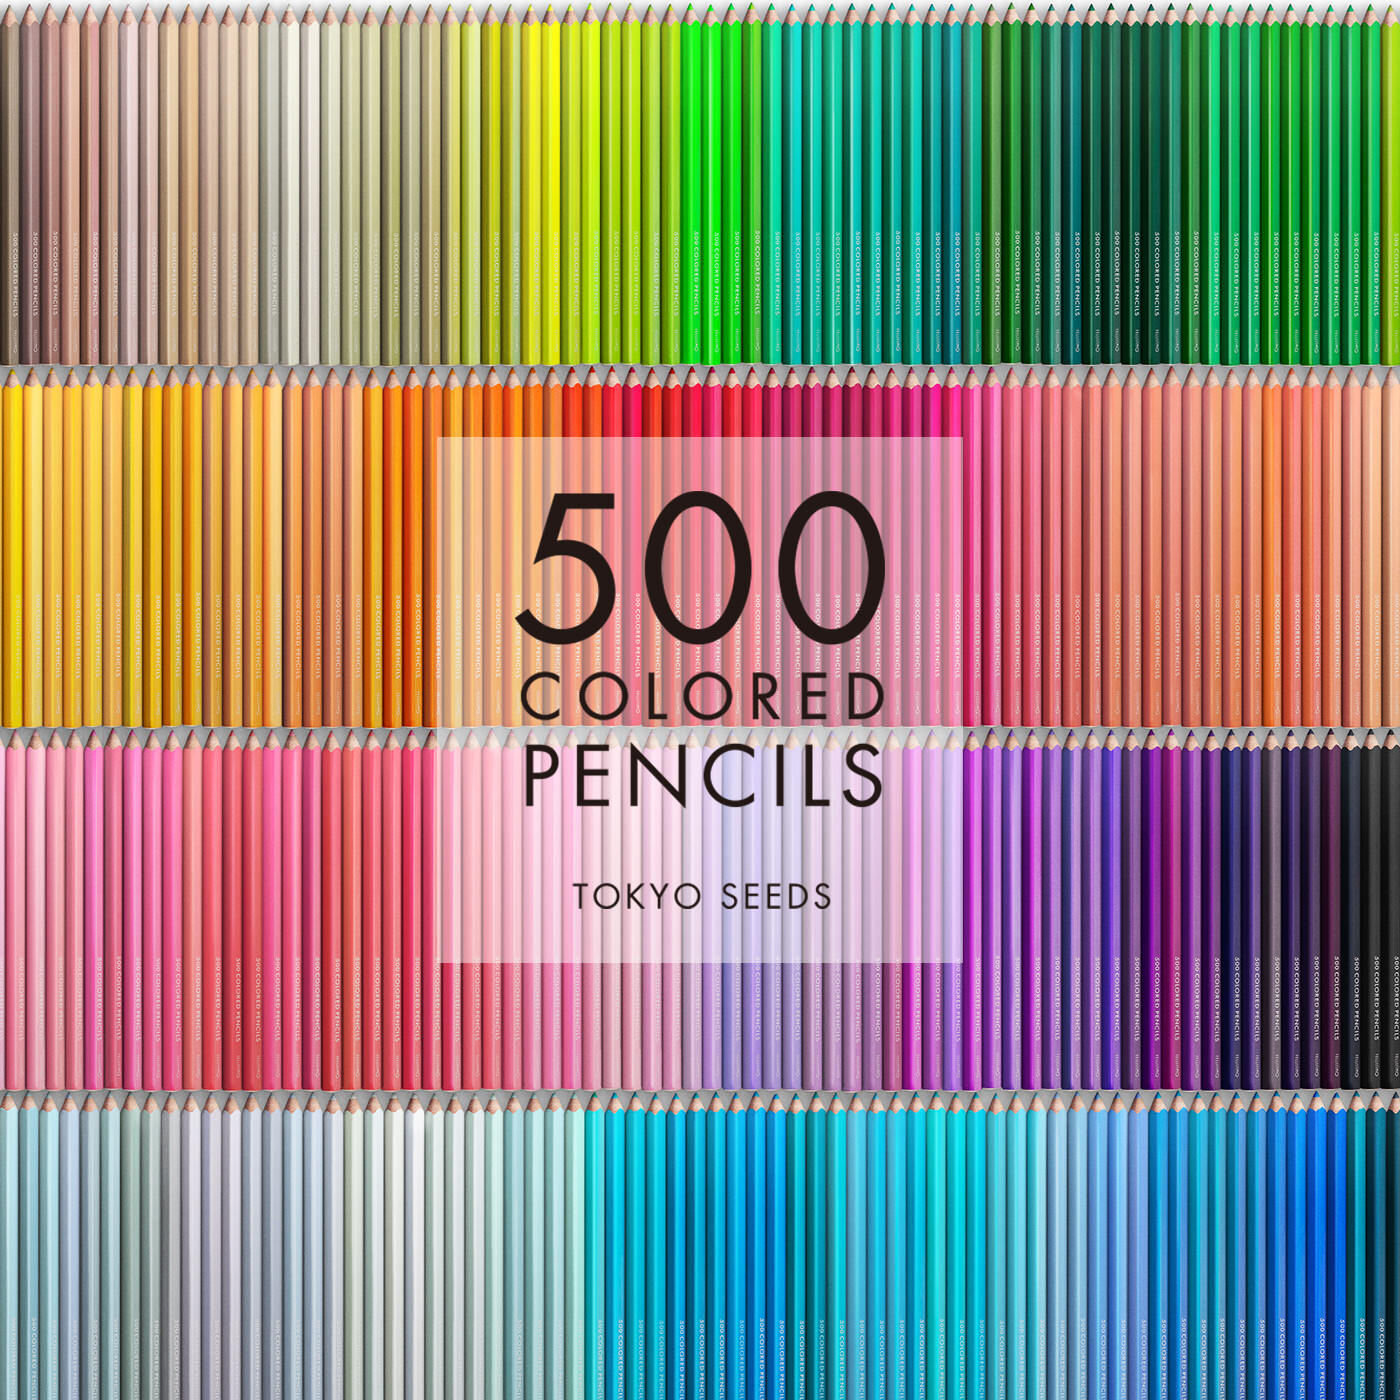 Real Stock|【5/500 NEON DARE】500色の色えんぴつ TOKYO SEEDS|1992年、世界初の「500色」という膨大な色数の色えんぴつが誕生して以来、その販売数は発売当初から合わせると、世界55ヵ国10万セット以上。今回、メイド・イン・ジャパンにこだわり、すべてが新しく生まれ変わって登場しました。